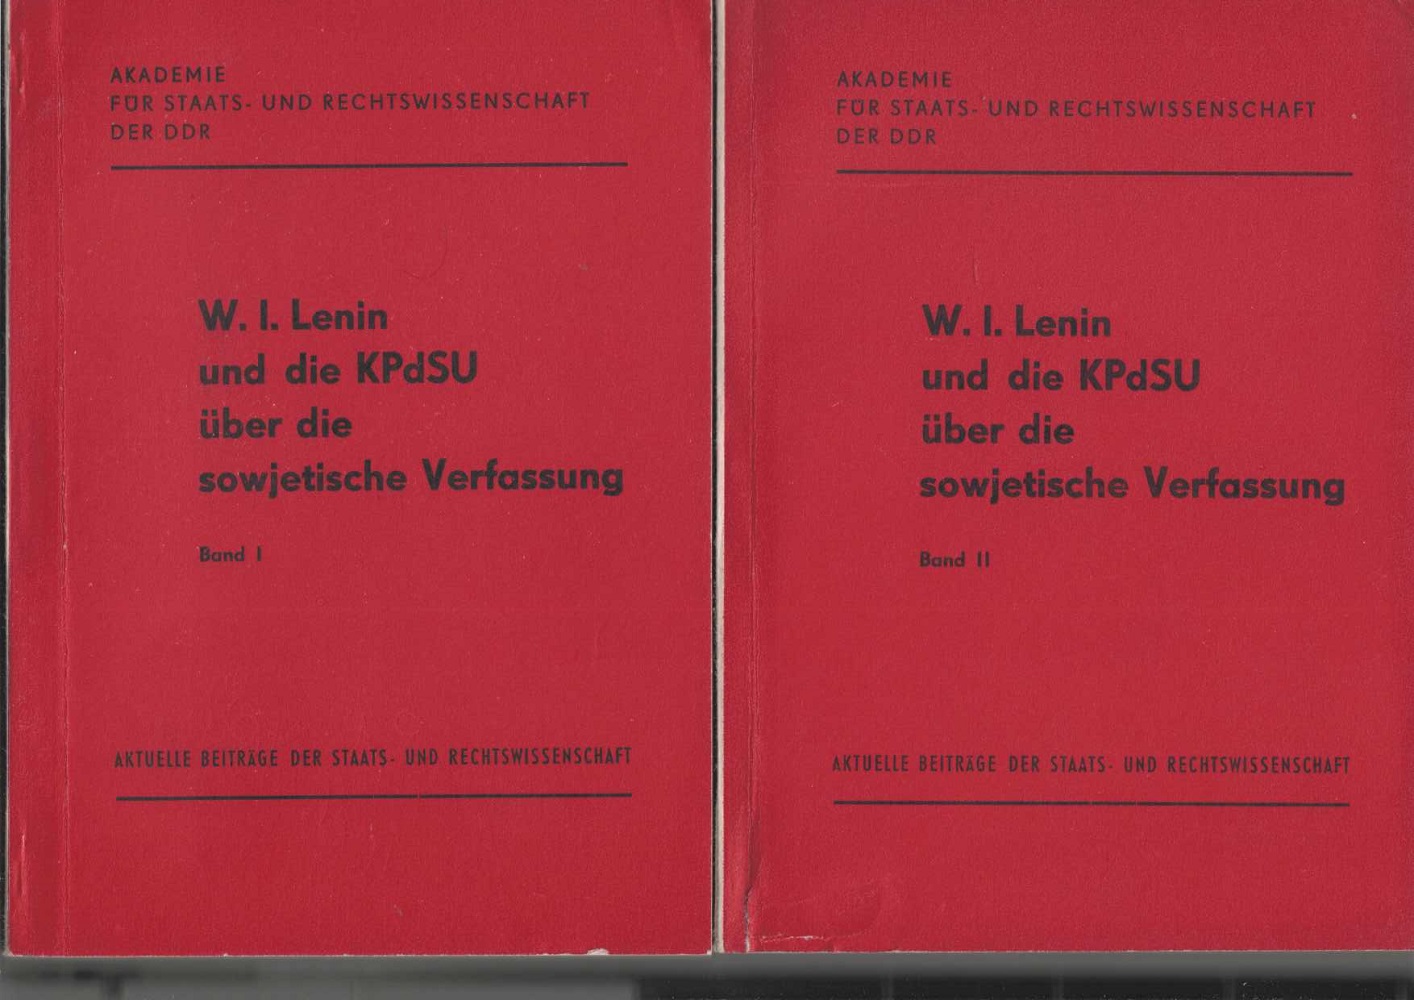 W. I. Lenin und die KPdSU über die sowjetische Verfassung : Band I (1) und Band II (2).